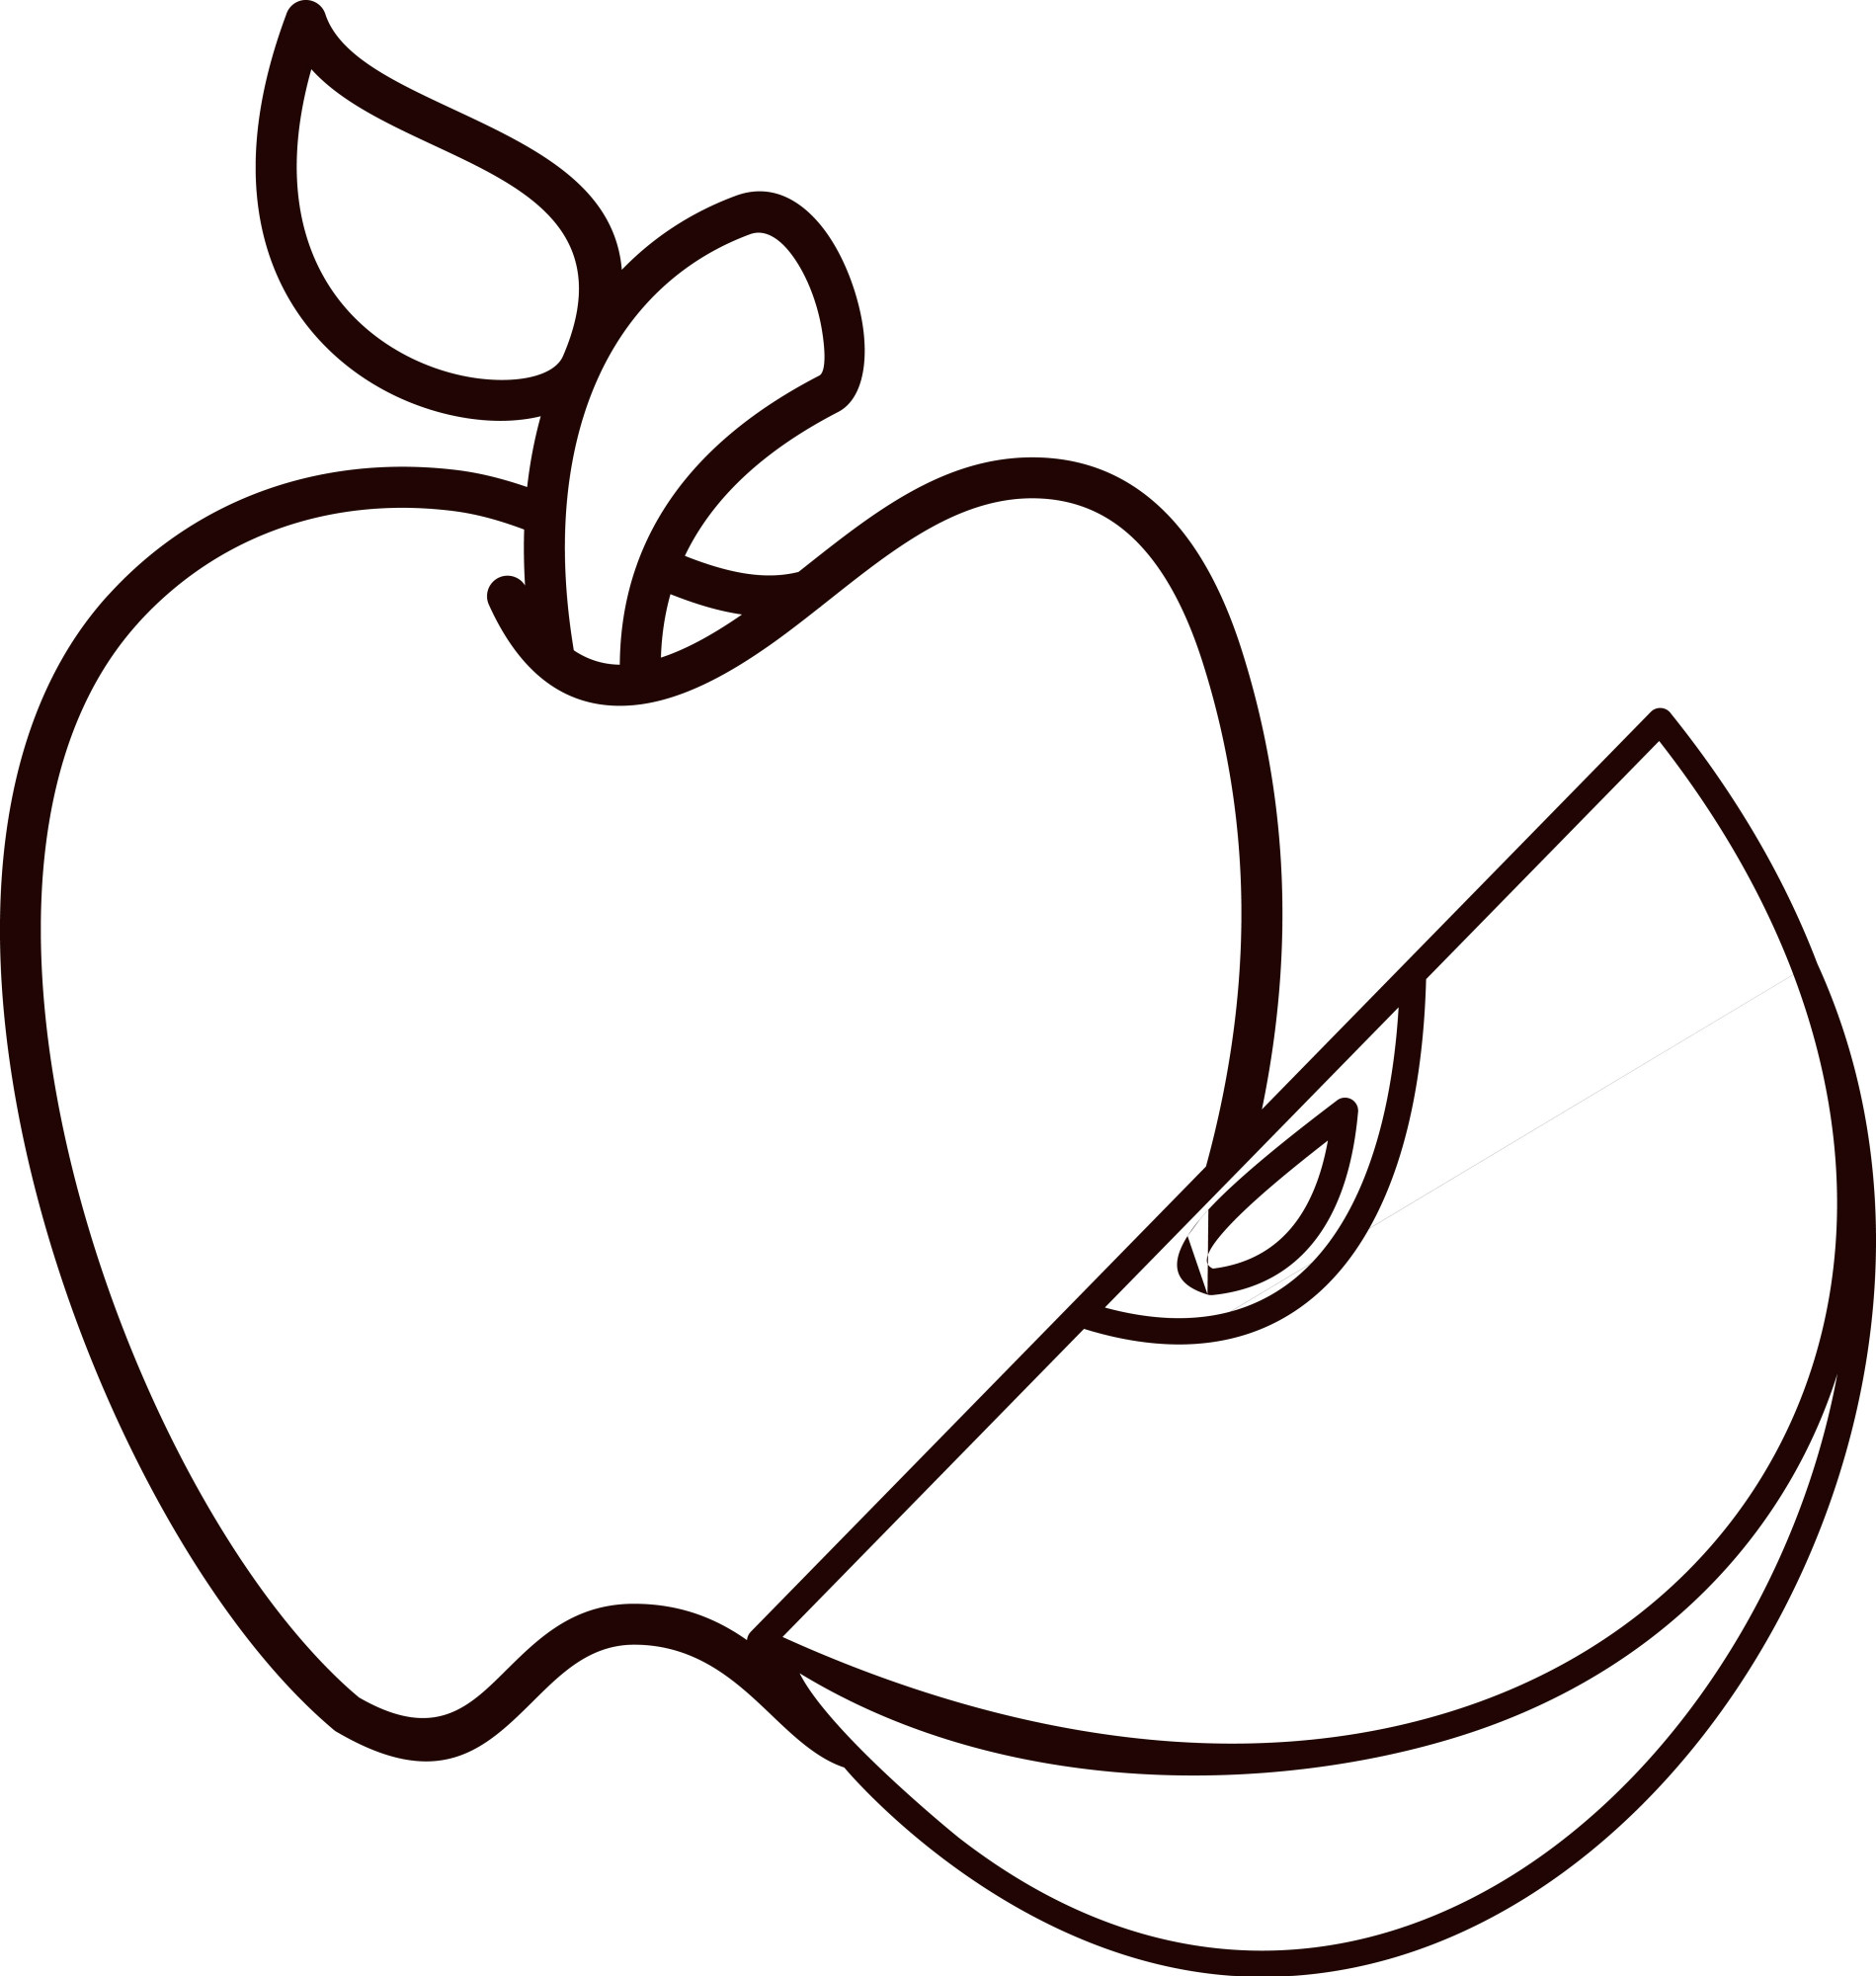 Раскраска для детей: осеннее яблоко с долькой